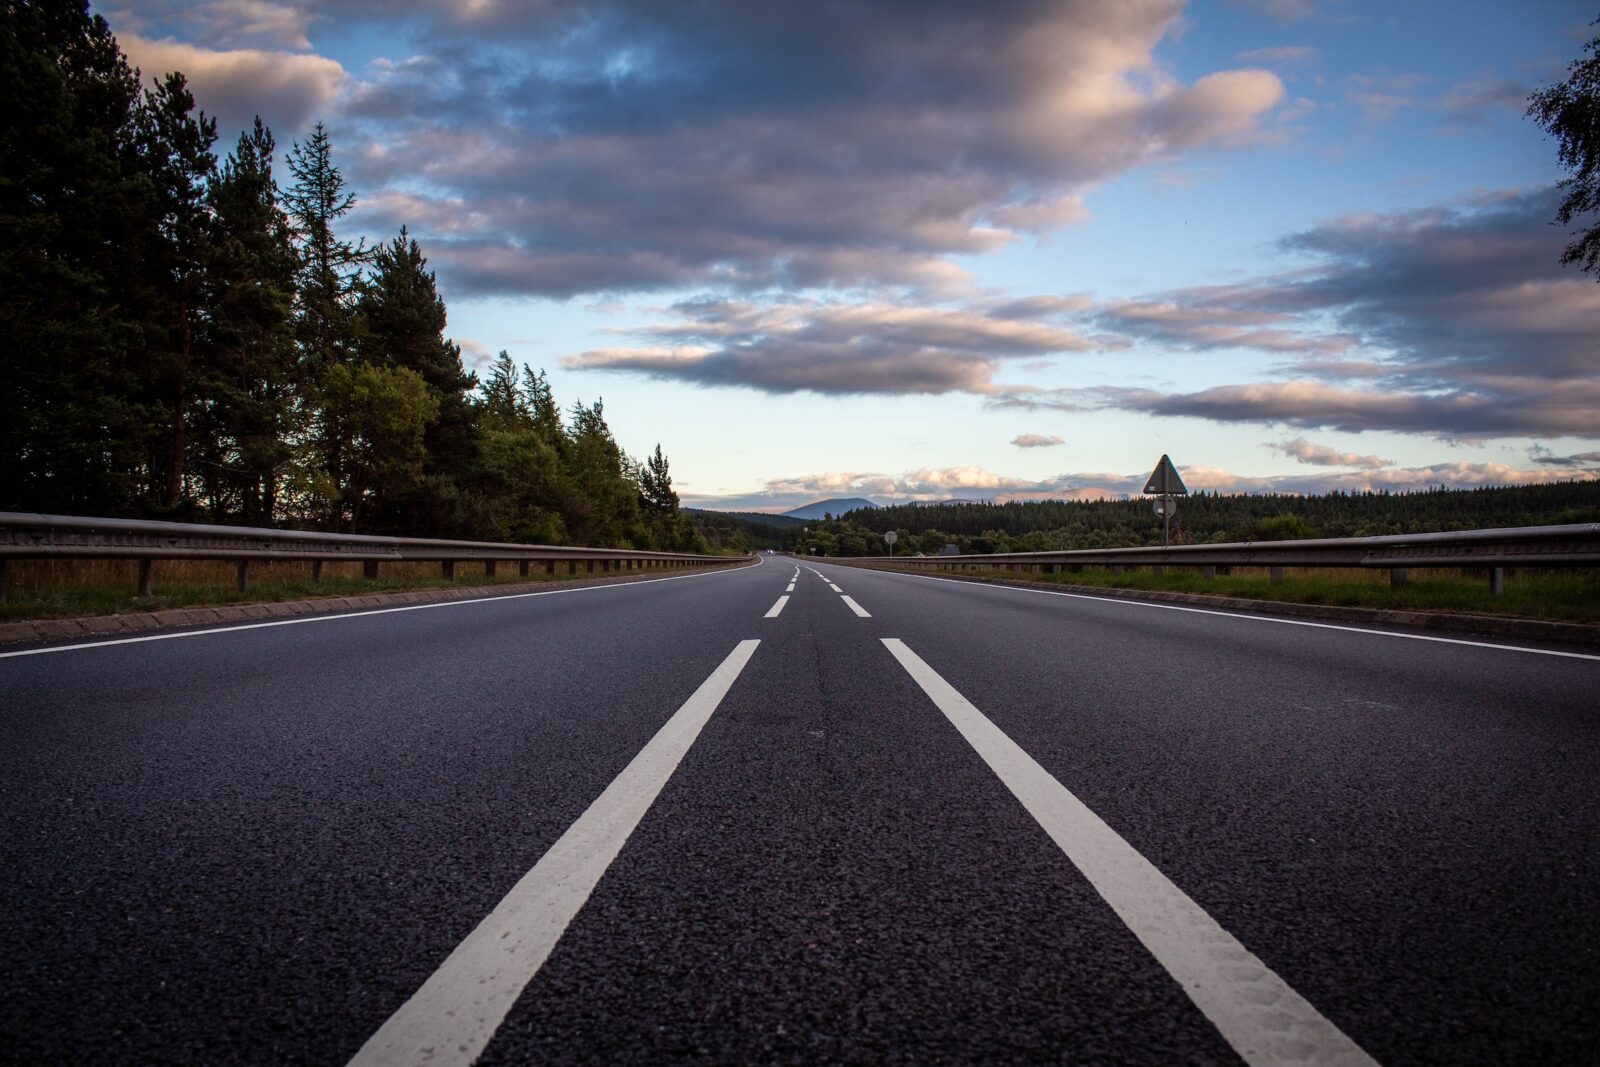 Landscape shot of a UK highway